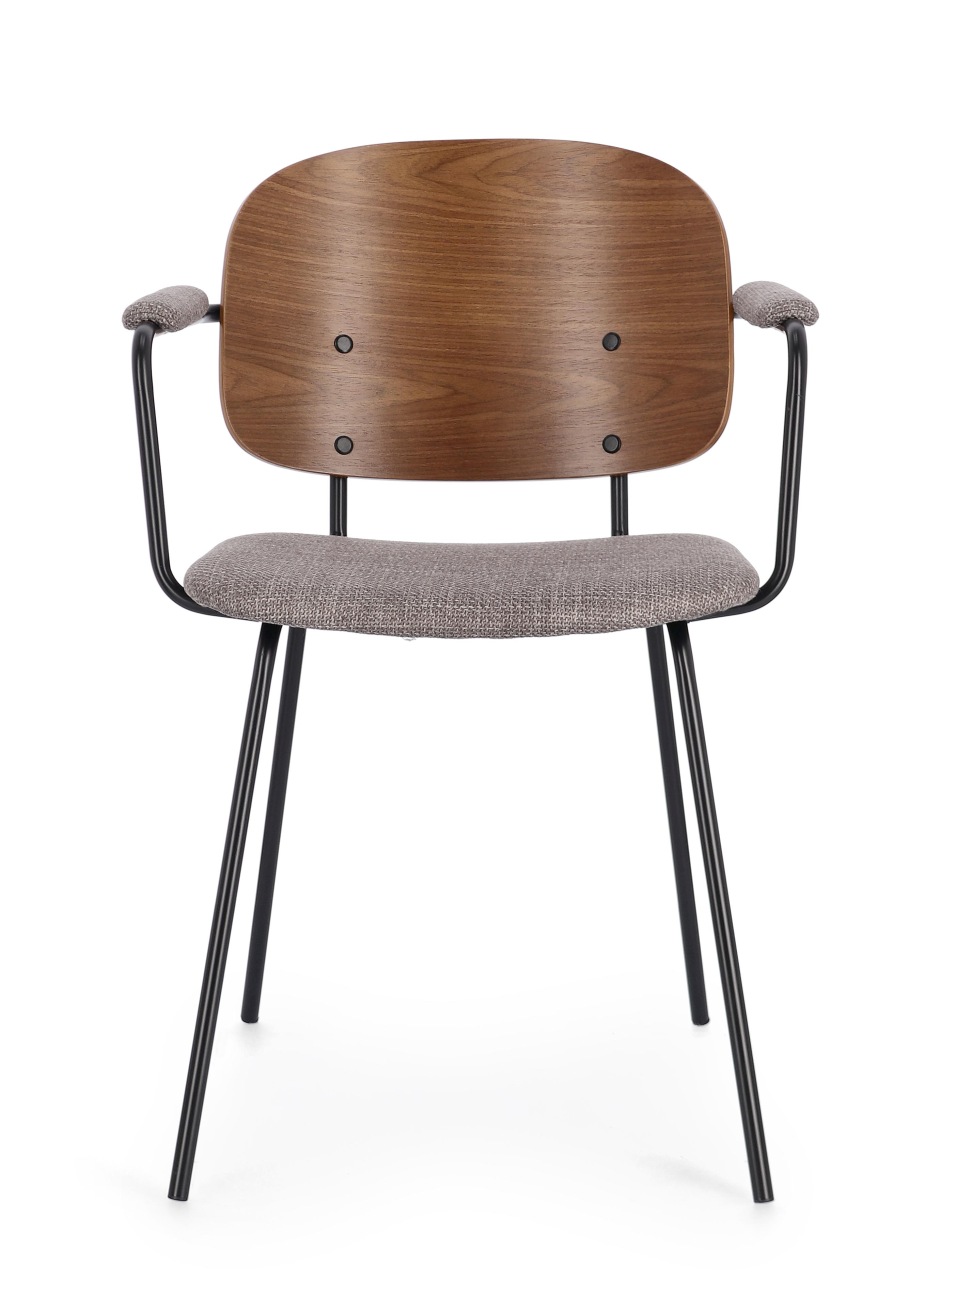 Der Esszimmerstuhl Sienna überzeugt mit seinem modernen Stil. Gefertigt wurde er aus Stoff, welcher einen grauen Farbton besitzt. Das Gestell ist aus Metall und hat eine schwarze Farbe. Der Stuhl besitzt eine Sitzhöhe von 48 cm.